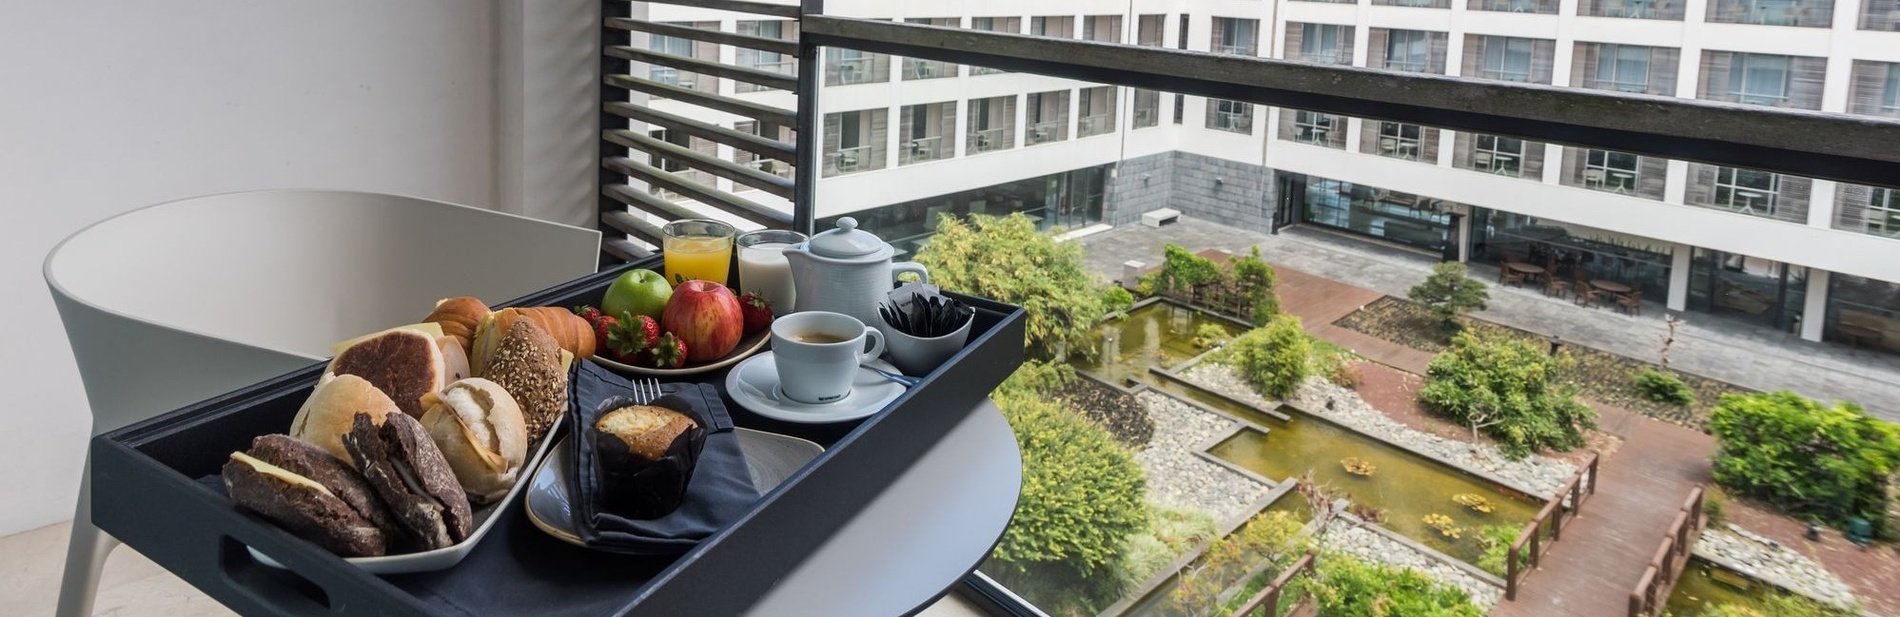 una bandeja de comida está sentada en un balcón frente a una ventana